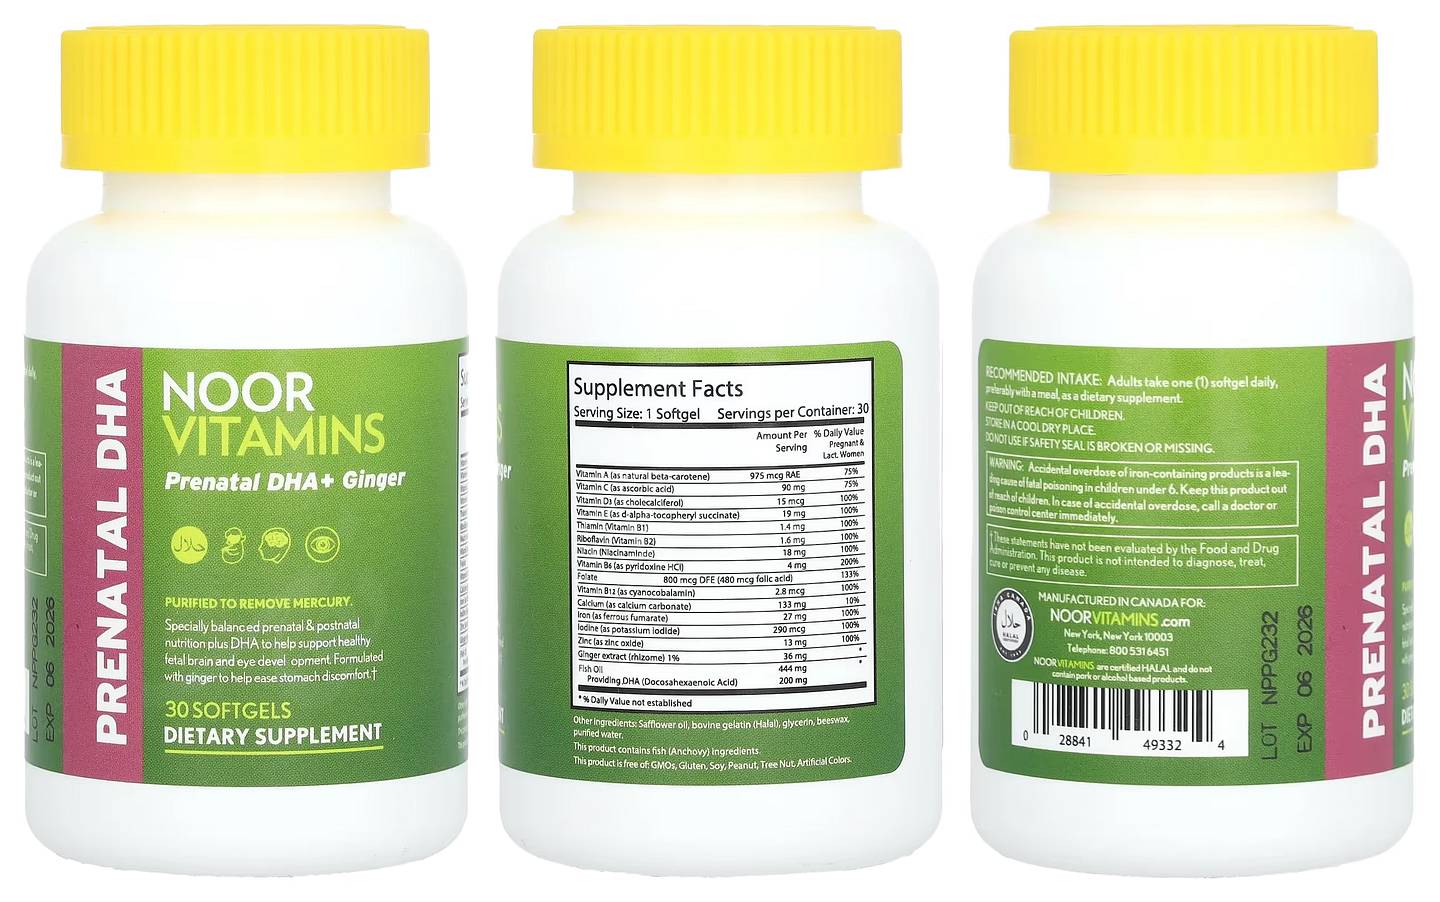 Noor Vitamins, Prenatal DHA + Ginger packaging